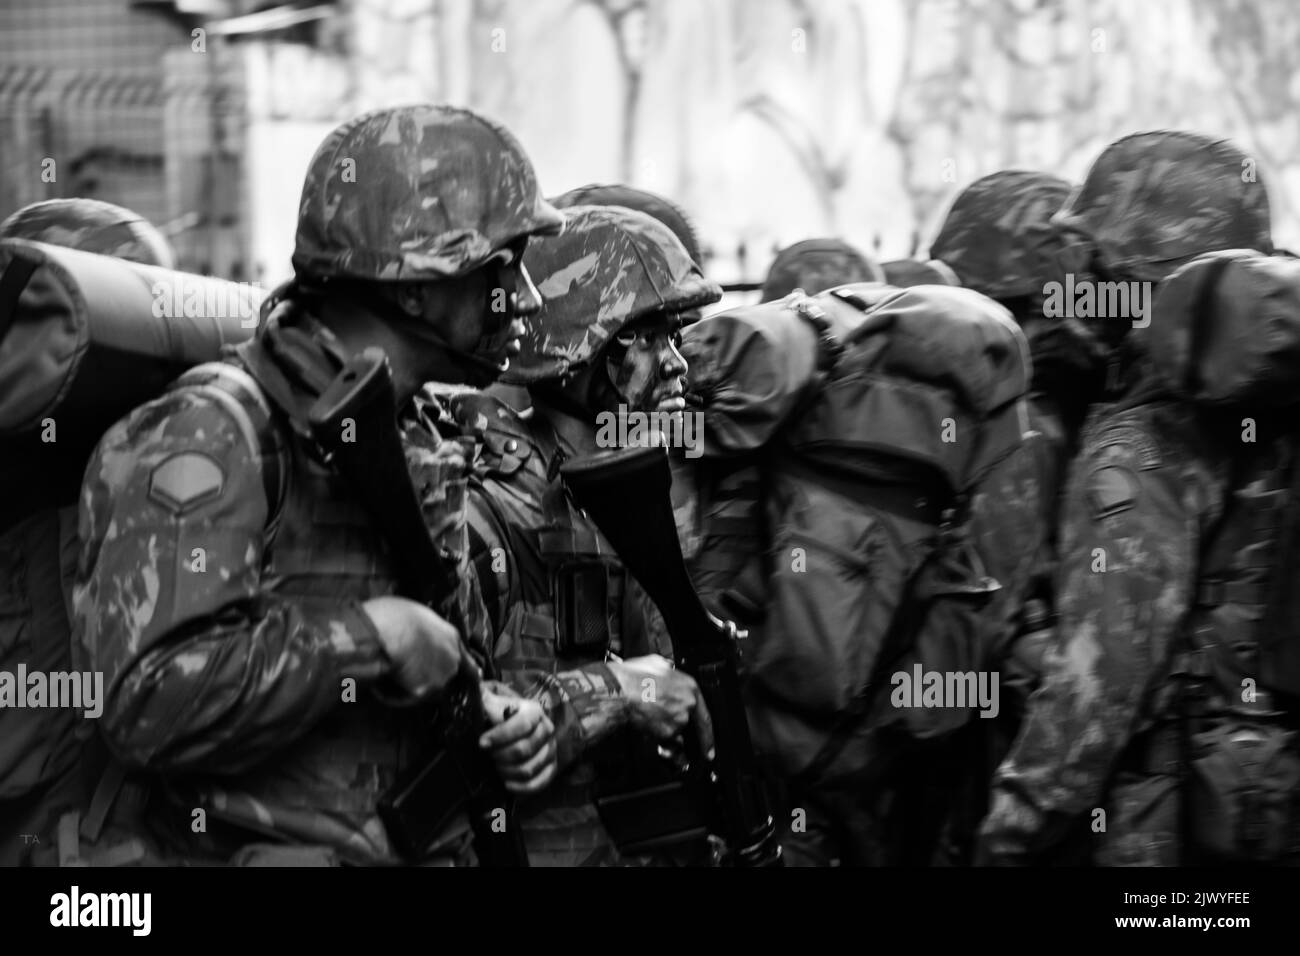 salvador, bahia, brasilien - 7. september 2016: Soldaten der brasilianischen Armee bei einer Militärparade zur Feier der Unabhängigkeit Brasiliens in der Stadt Salva Stockfoto